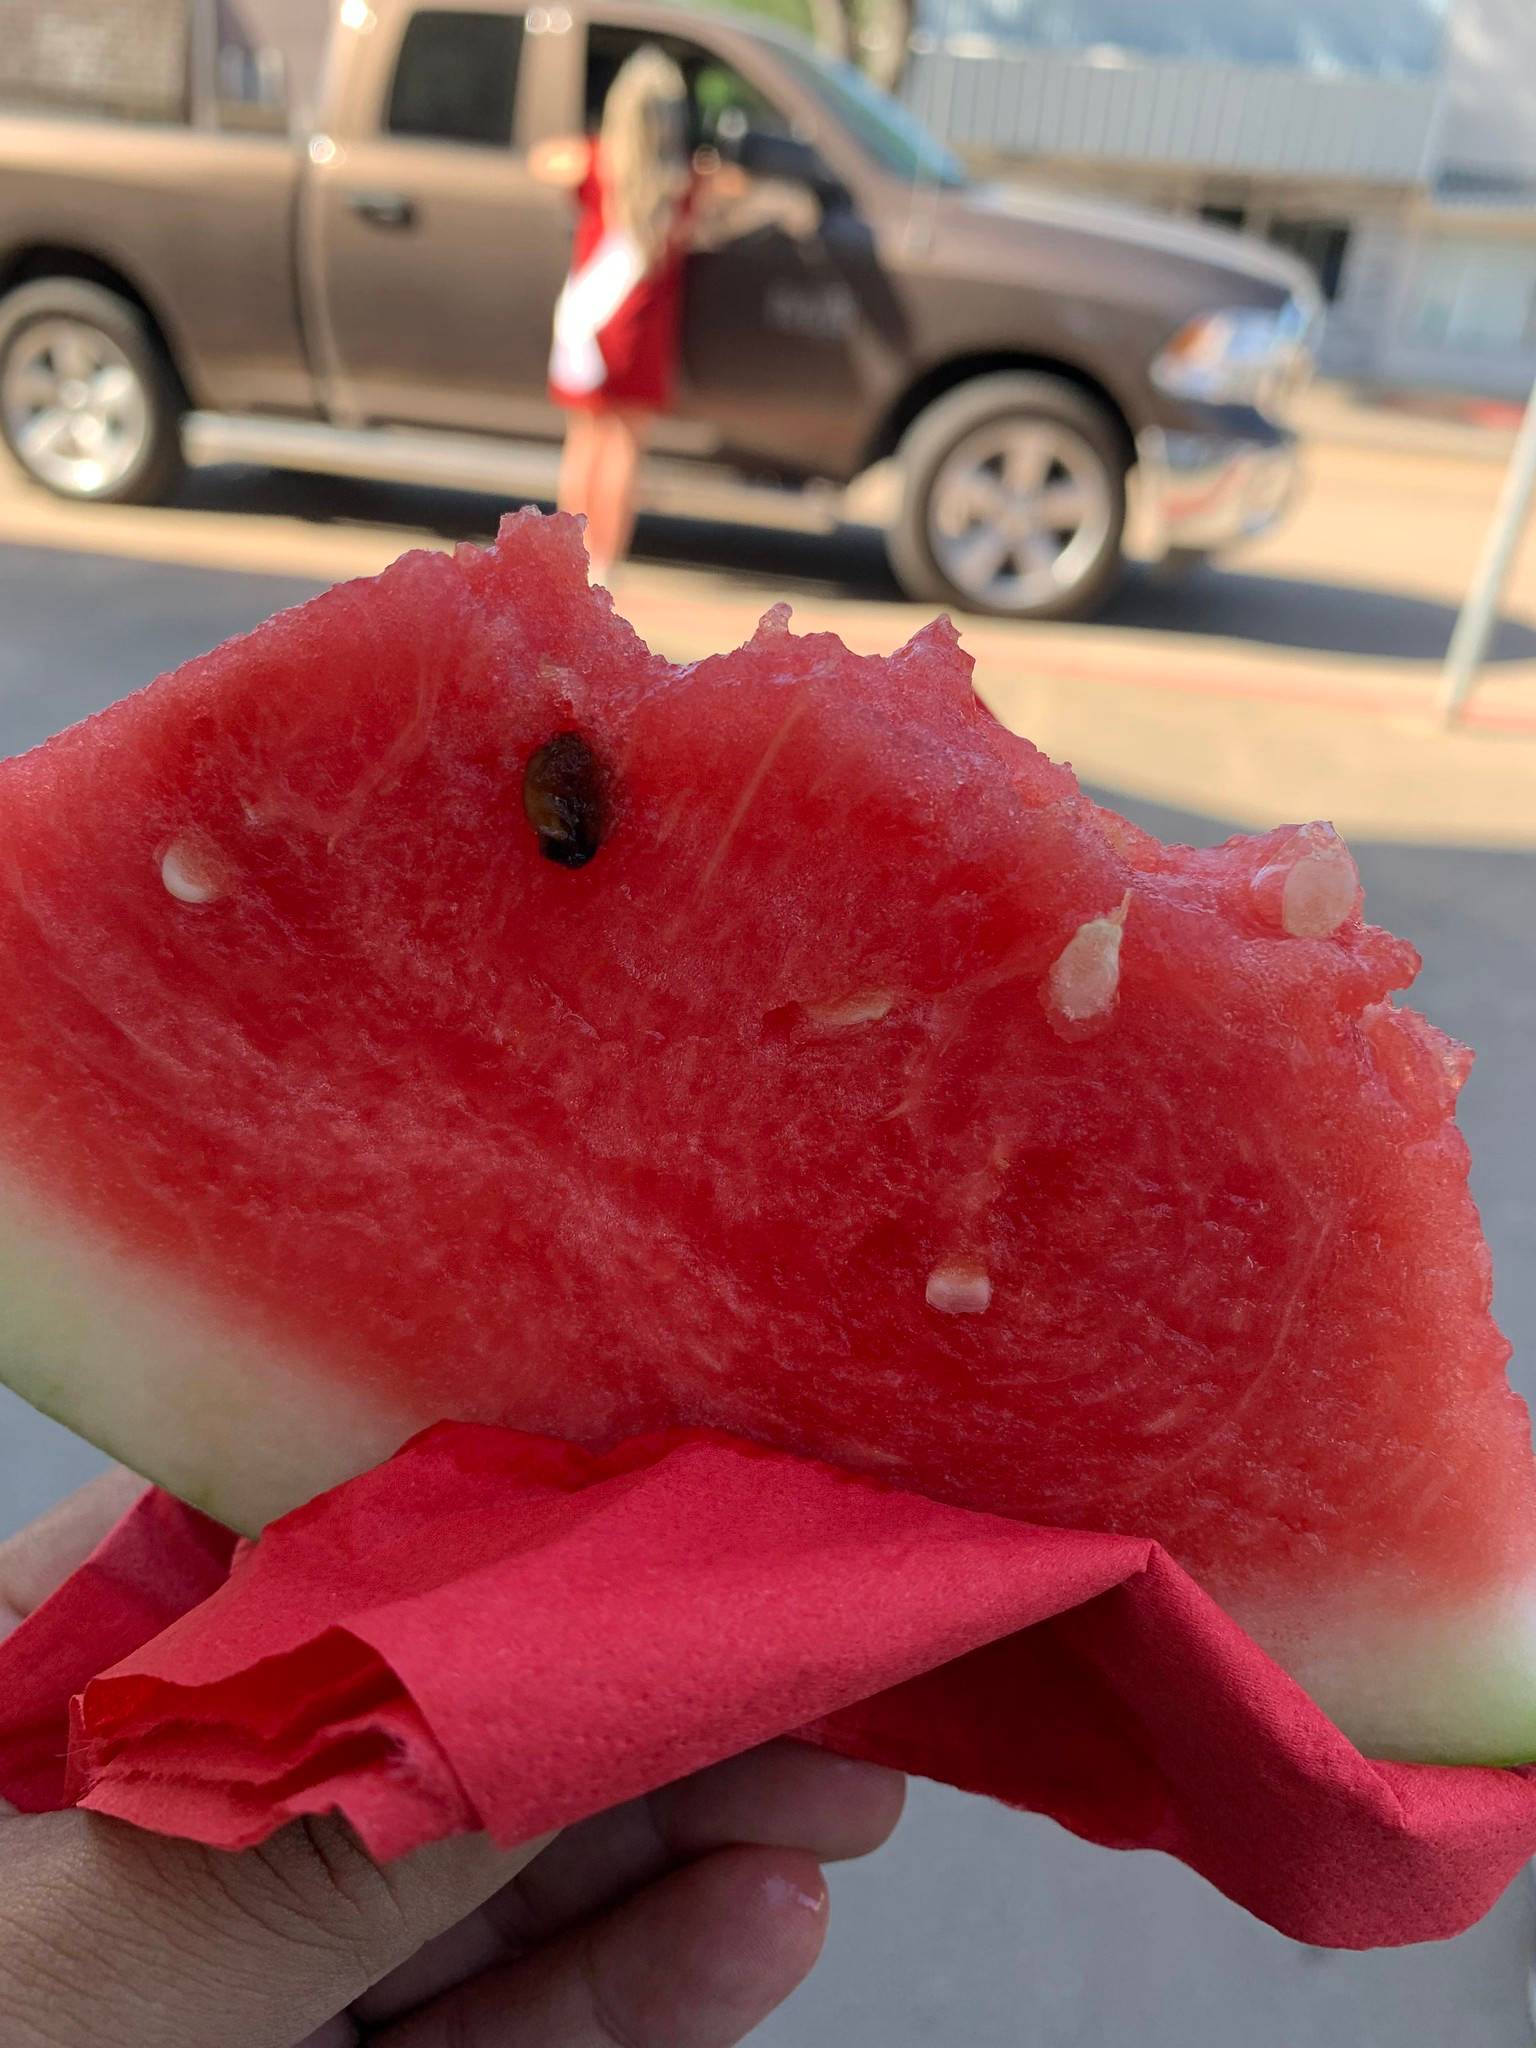 Watermelon Festival in Falfurrias, Texas